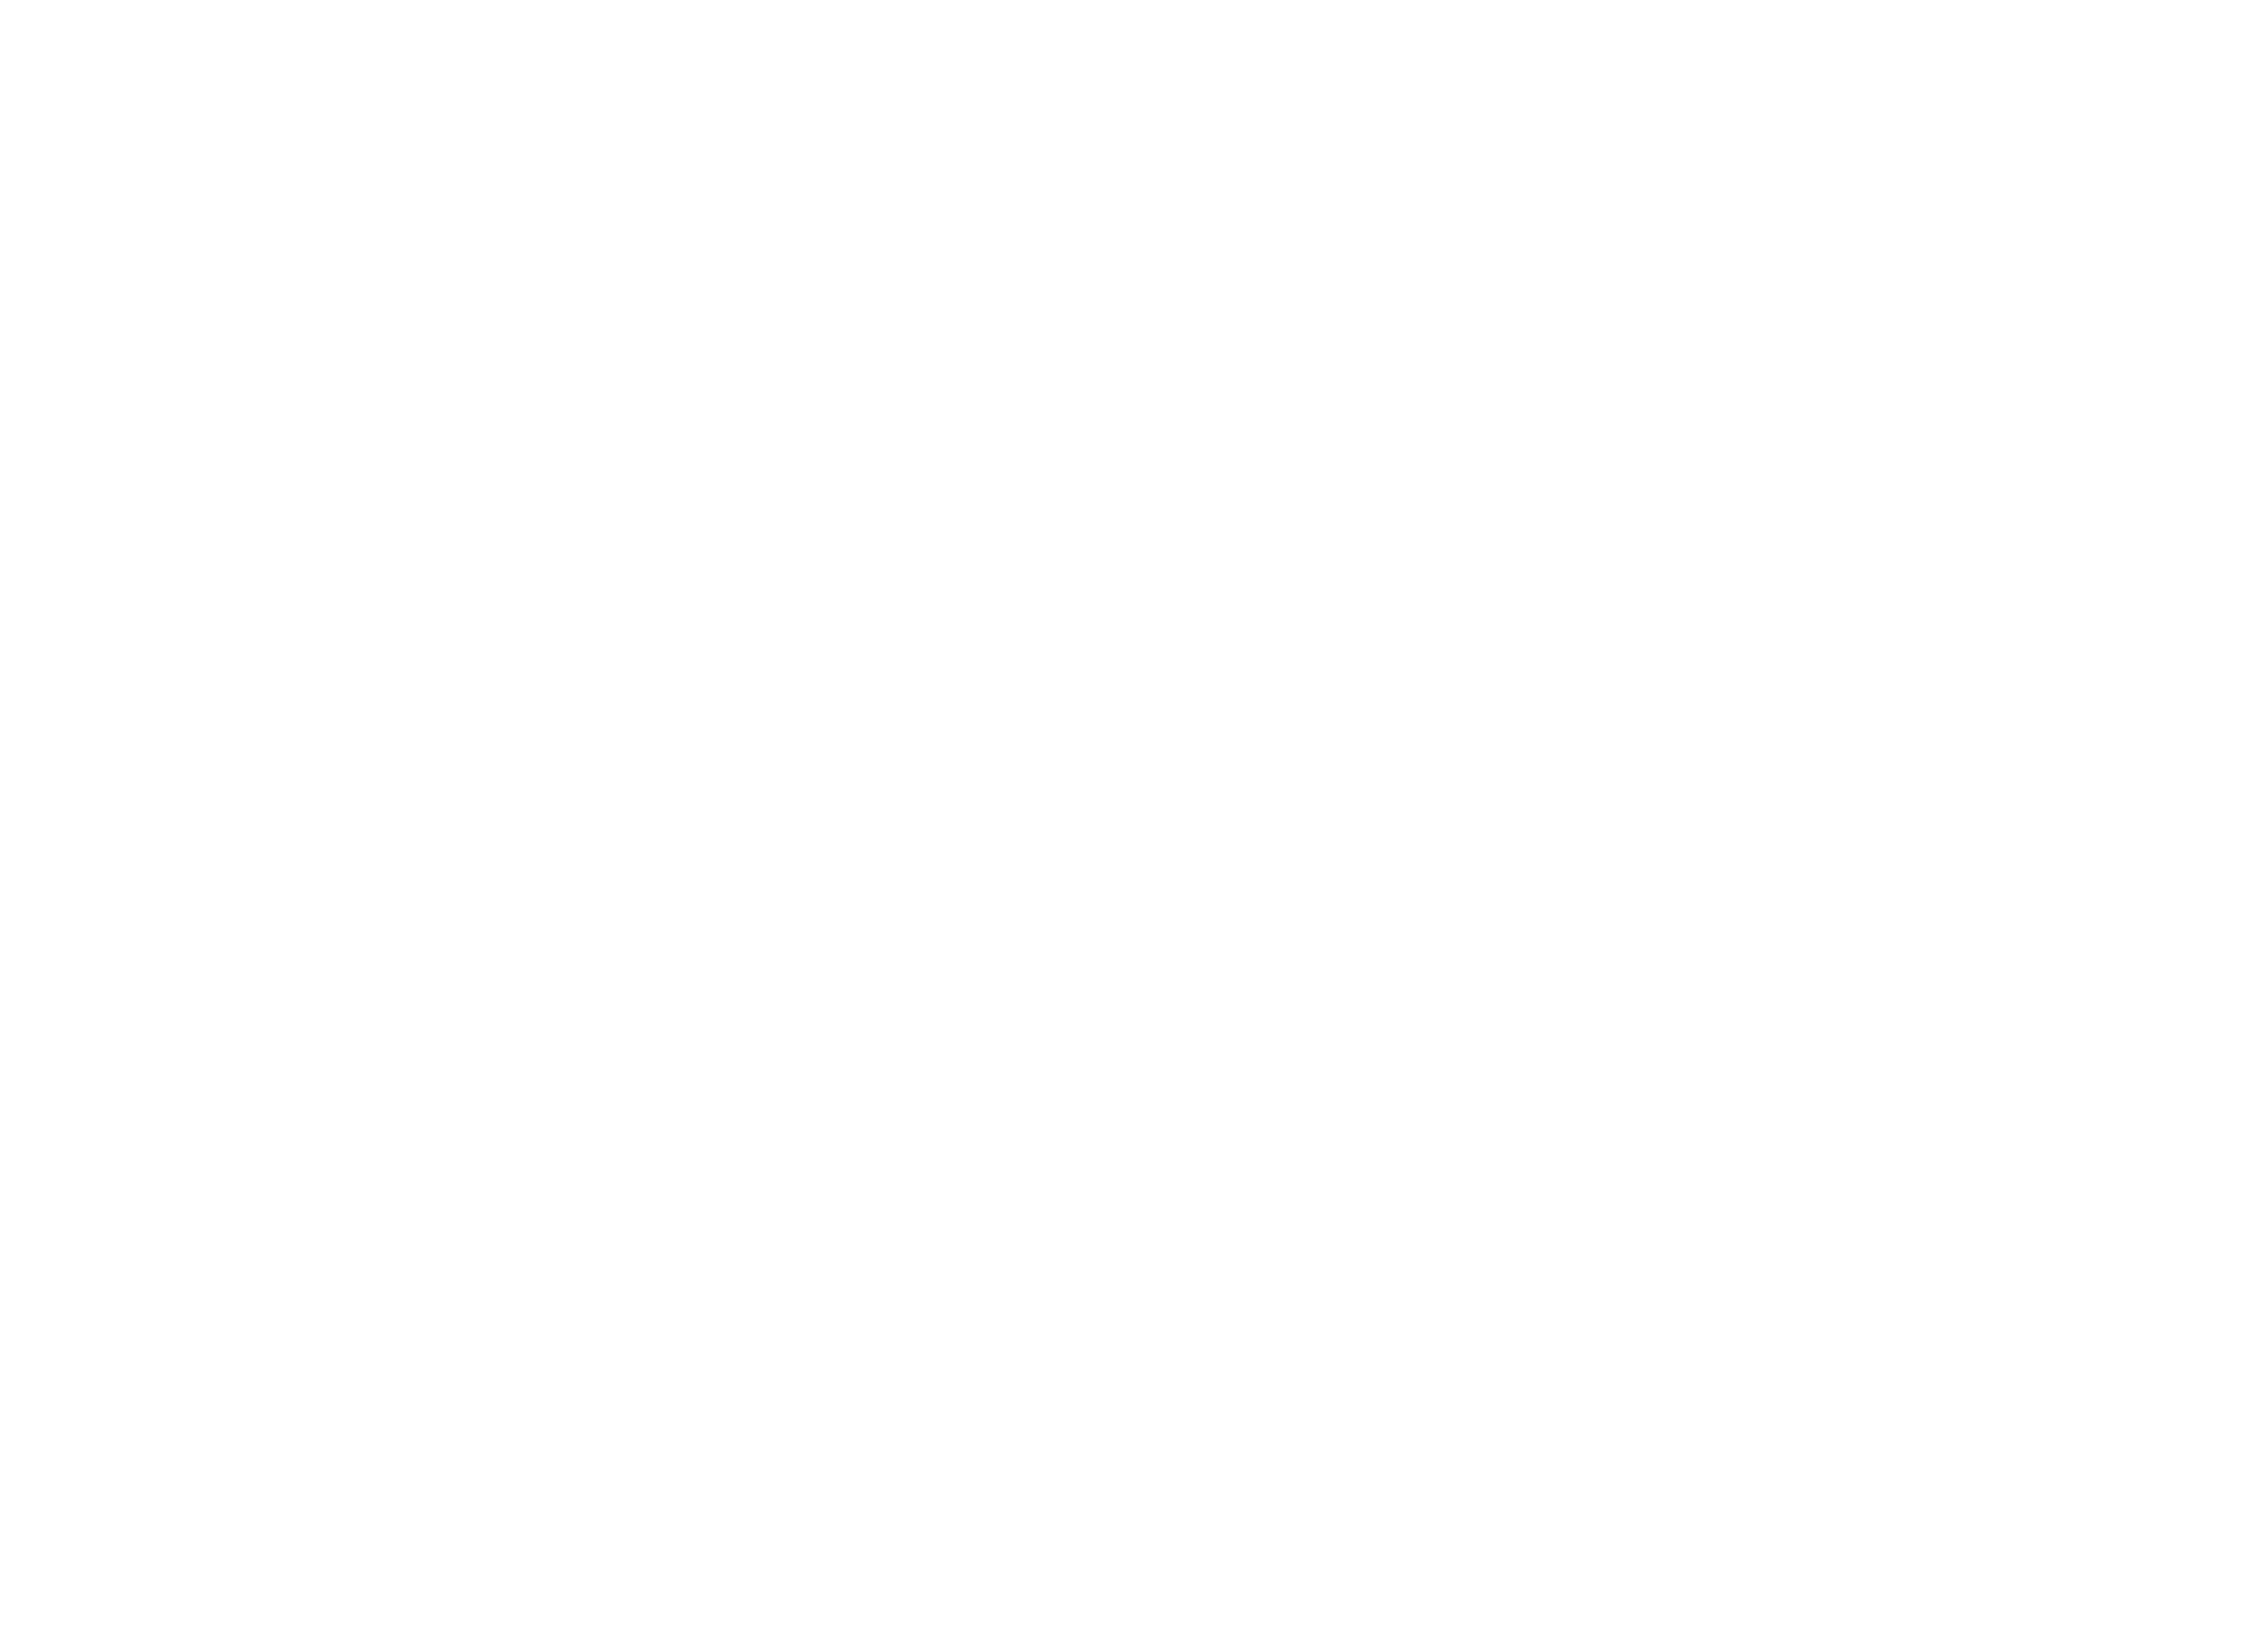 Na imagem está escrito Fala Lu, com uma parte de um estetoscópio simulando a letra L e outra parte do estetoscópio simulando a letra U.